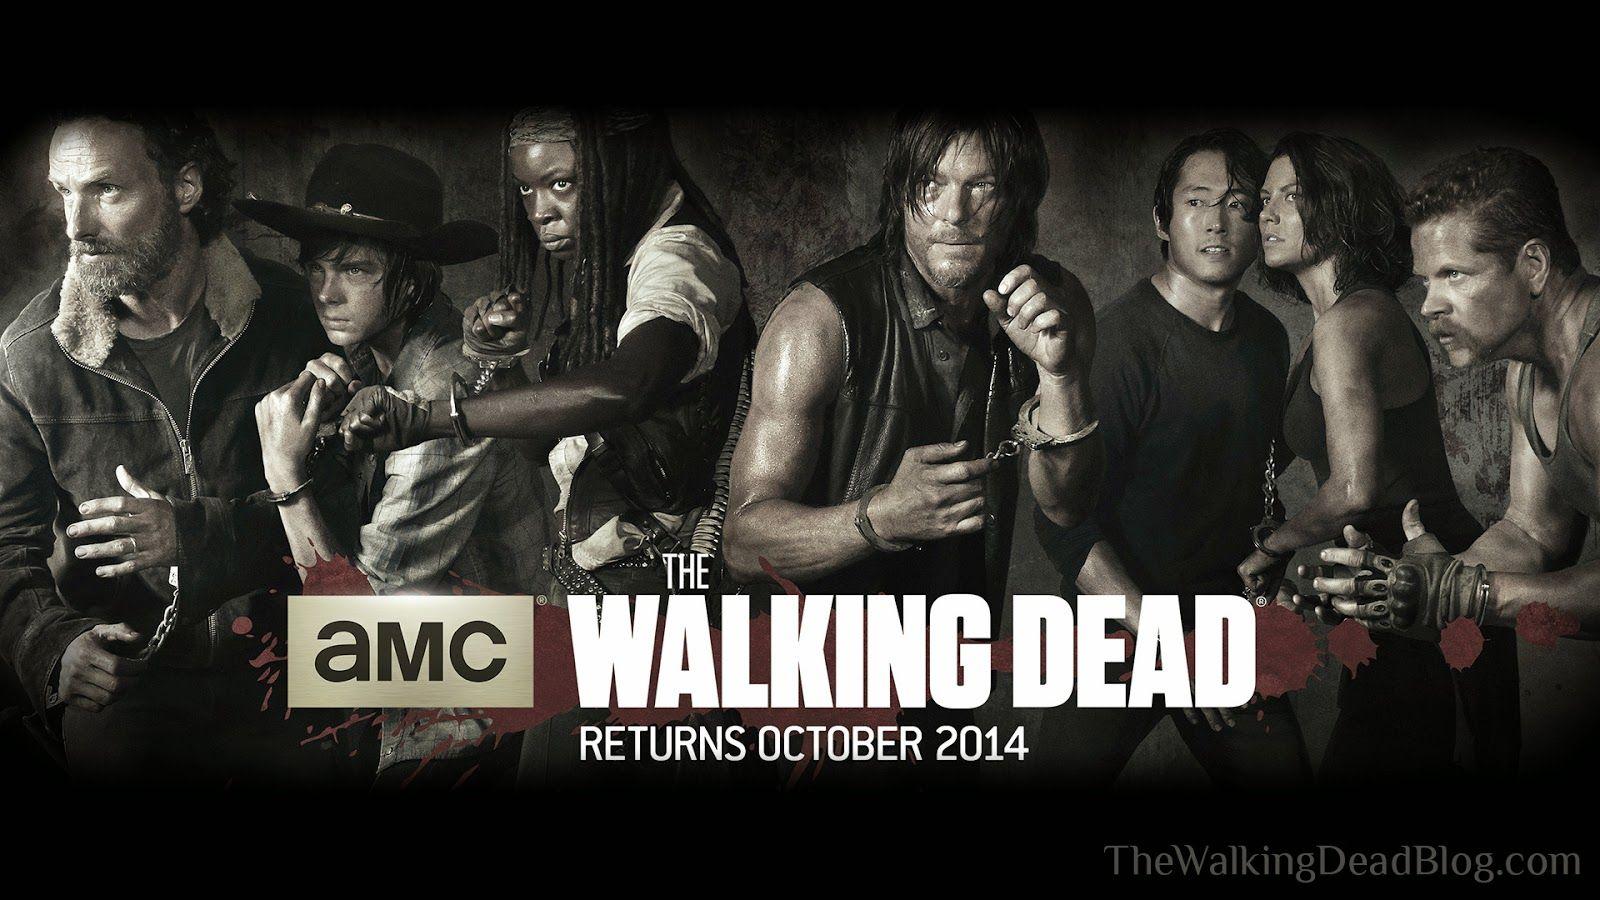 The Walking Dead Blog: The Walking Dead Season 5 Wallpaper!